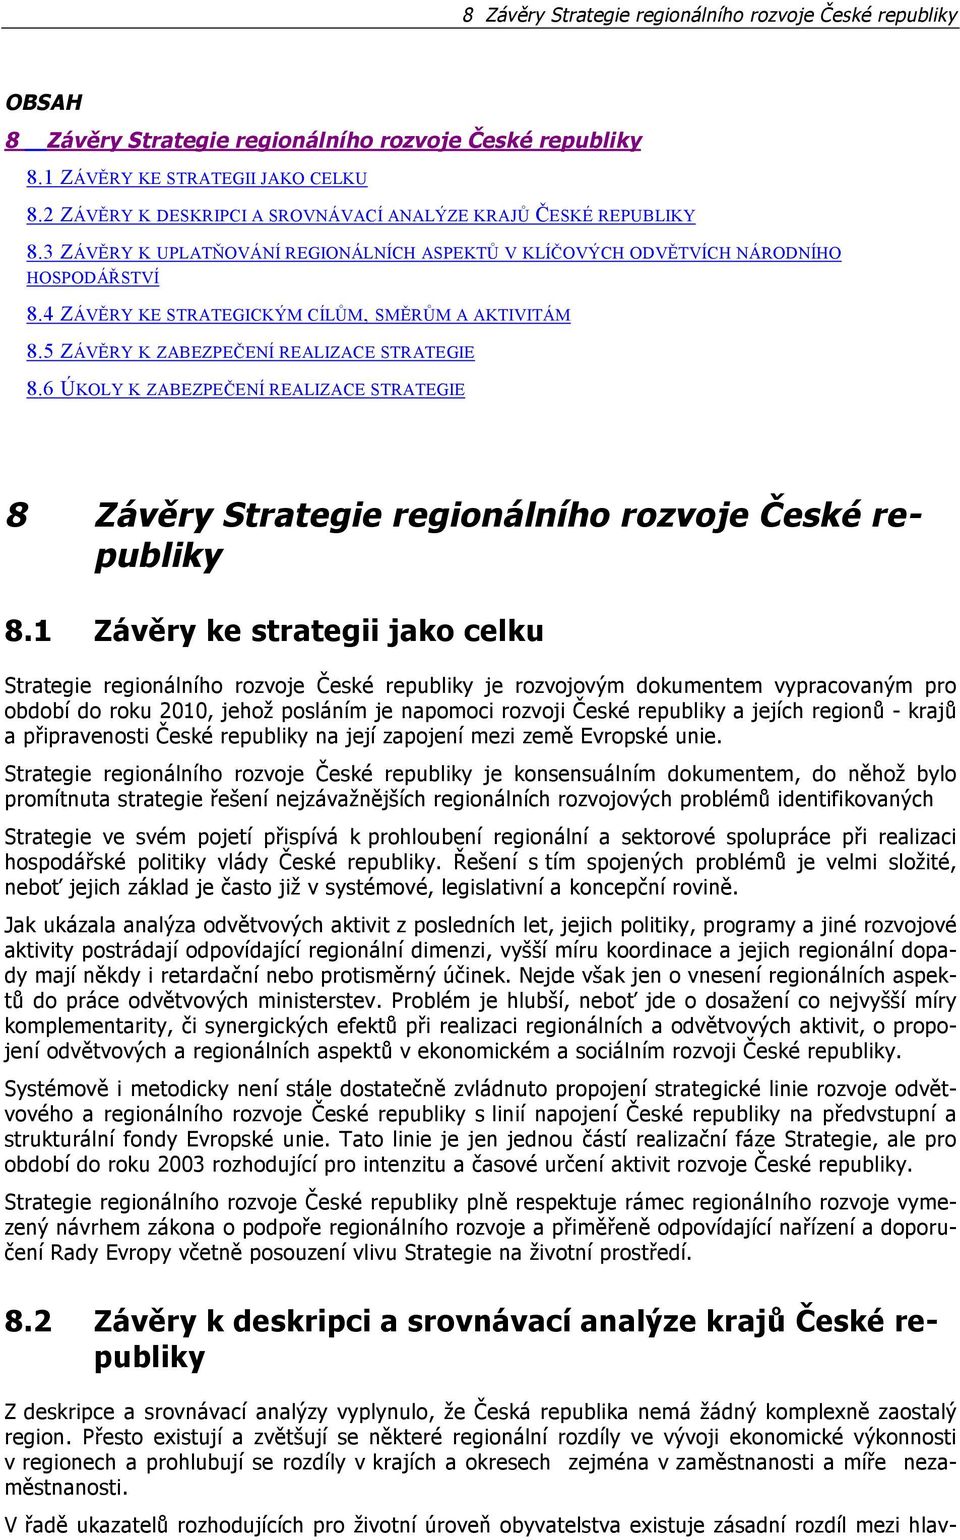 4 ZÁVĚRY KE STRATEGICKÝM CÍLŮM, SMĚRŮM A AKTIVITÁM 8.5 ZÁVĚRY K ZABEZPEČENÍ REALIZACE STRATEGIE 8.6 ÚKOLY K ZABEZPEČENÍ REALIZACE STRATEGIE 8 Závěry Strategie regionálního rozvoje České republiky 8.